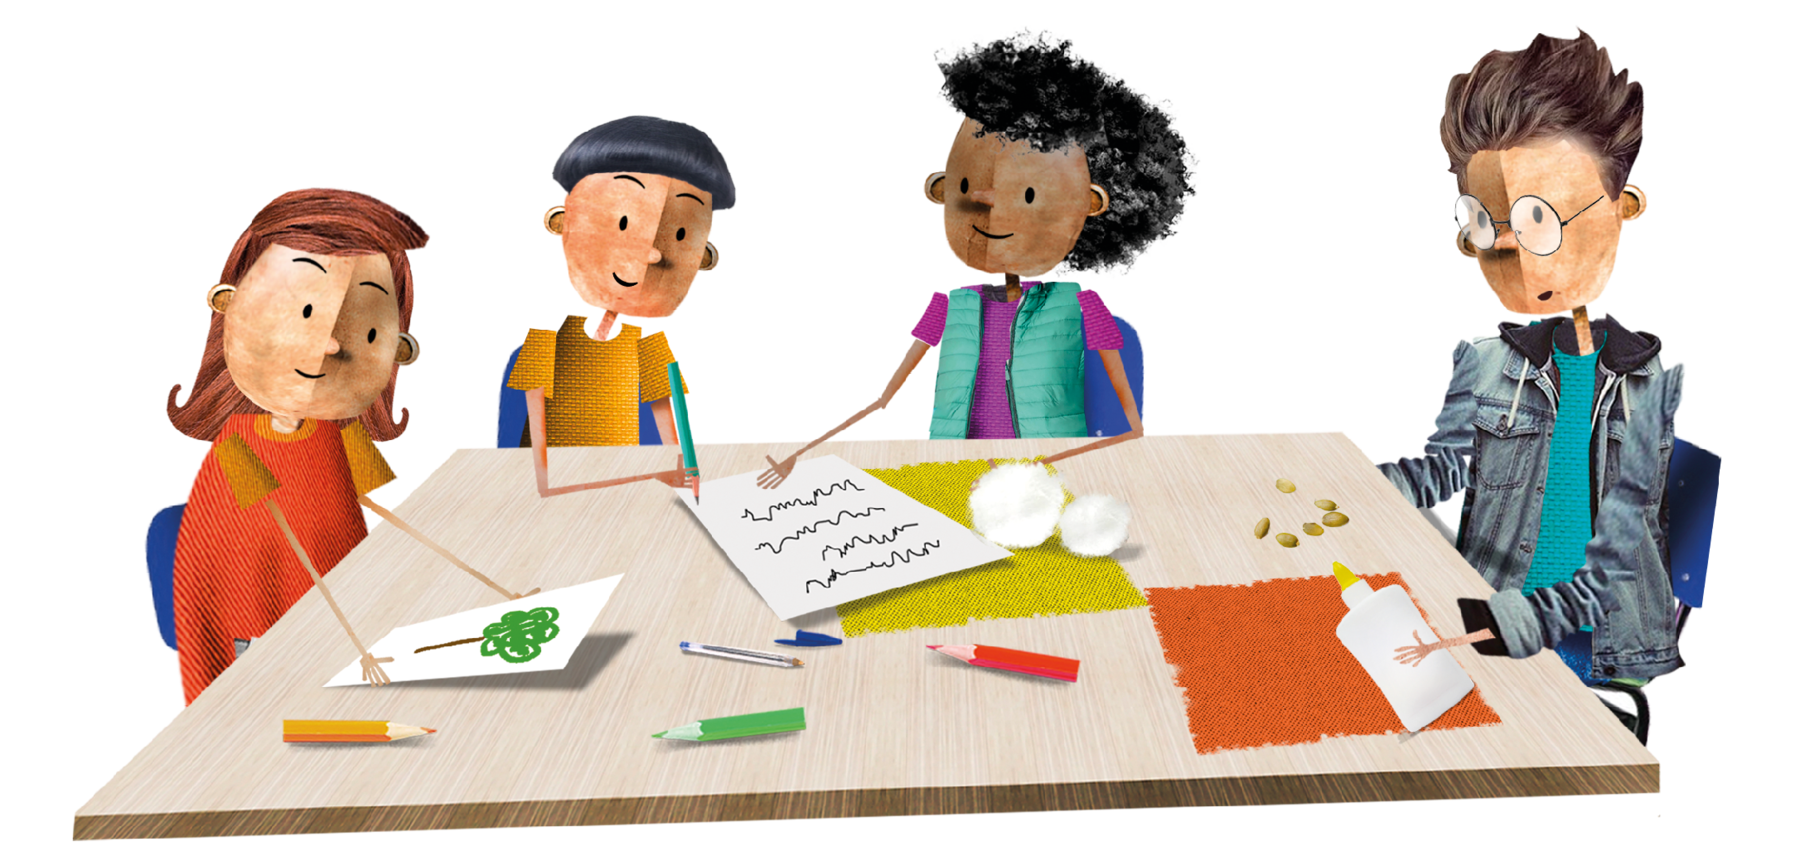 Ilustração. Quatro crianças com características diversas estão sentadas ao redor de uma mesa quadriculada e realizam em grupo uma atividade com papéis, cola, grãos, lápis coloridos e caneta.